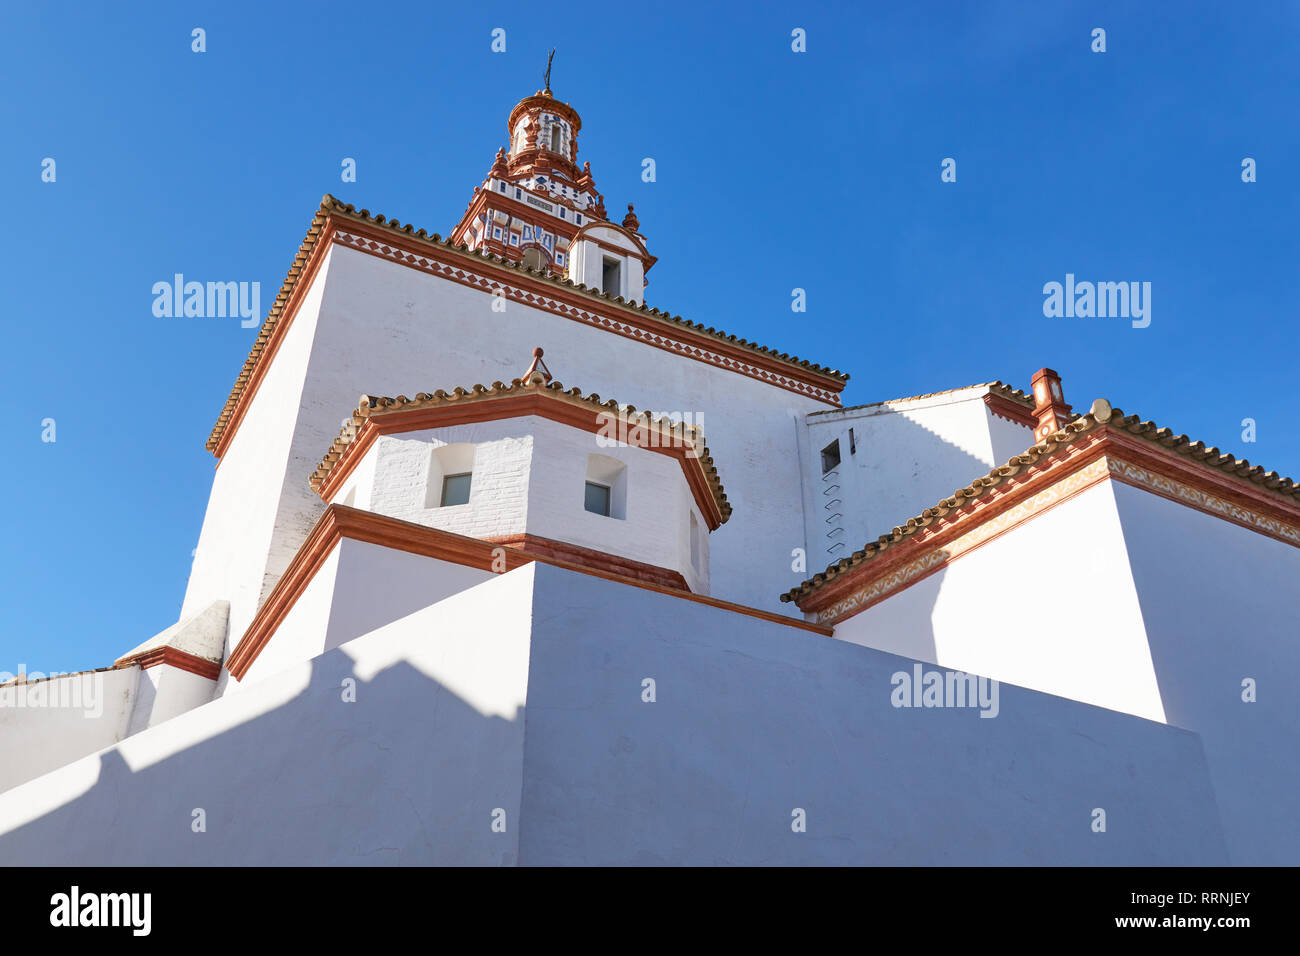 Kirche von Fuentes de Andalusien, die Gemeinde von Sevilla. Spanien Stockfoto